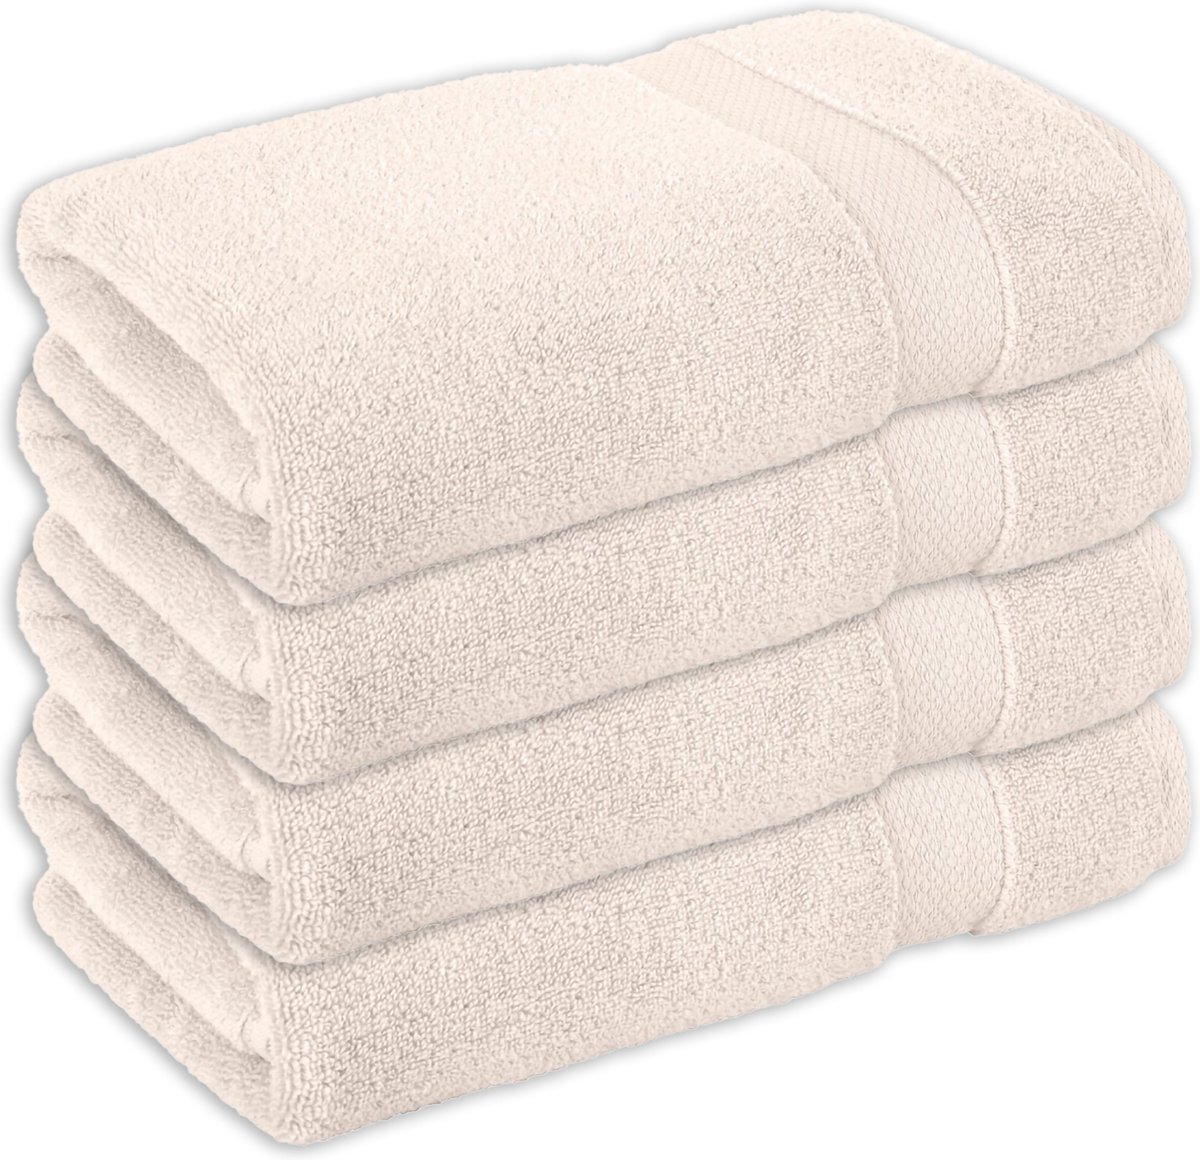 Vitality Pur - Handdoeken Sofia Collectie - Handdoeken set 50x90 – 100% Katoen - Sand - 4 stuks